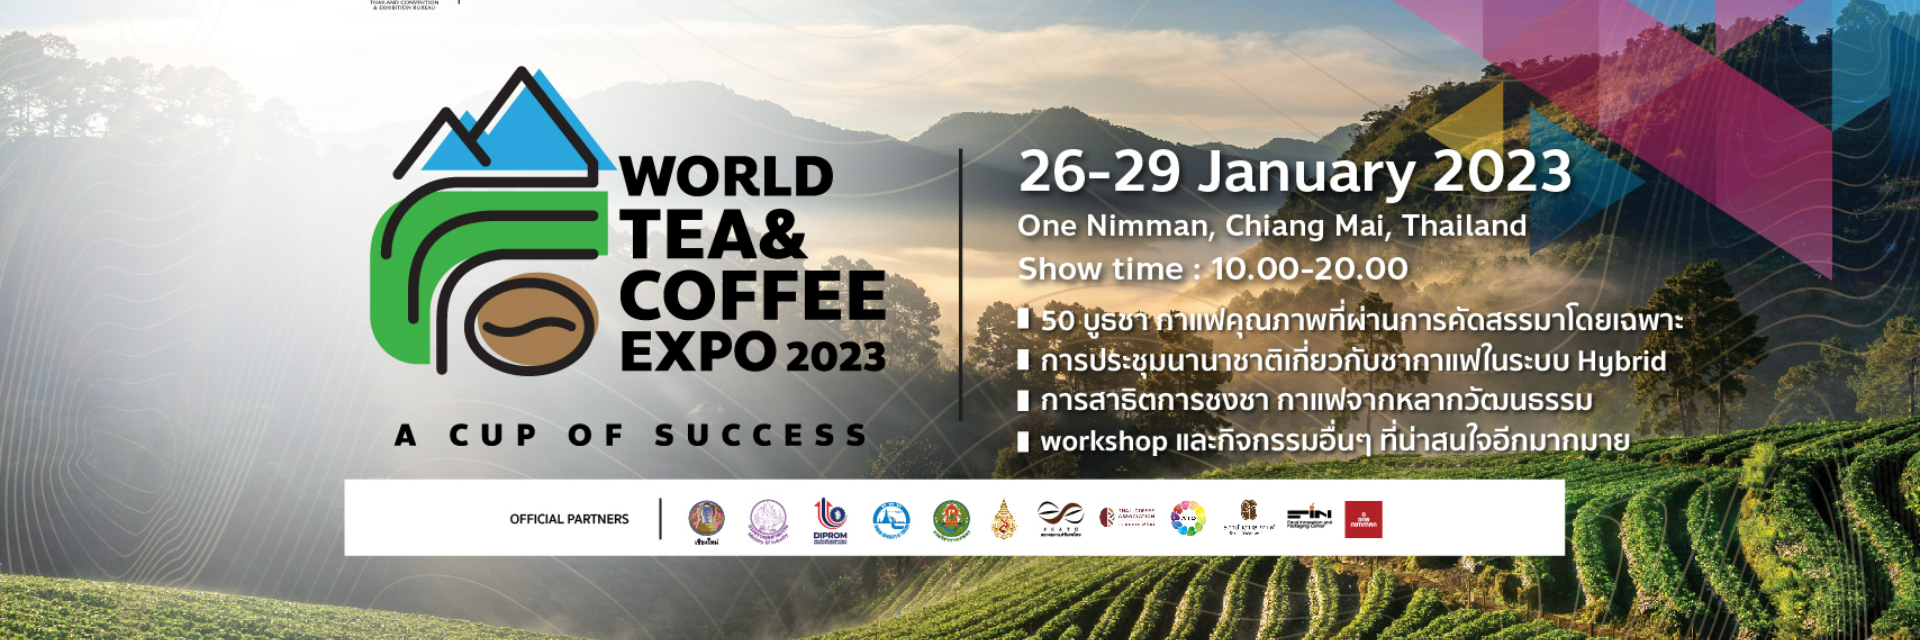 งาน World Tea & Coffee Expo 2023 จังหวัดเชียงใหม่